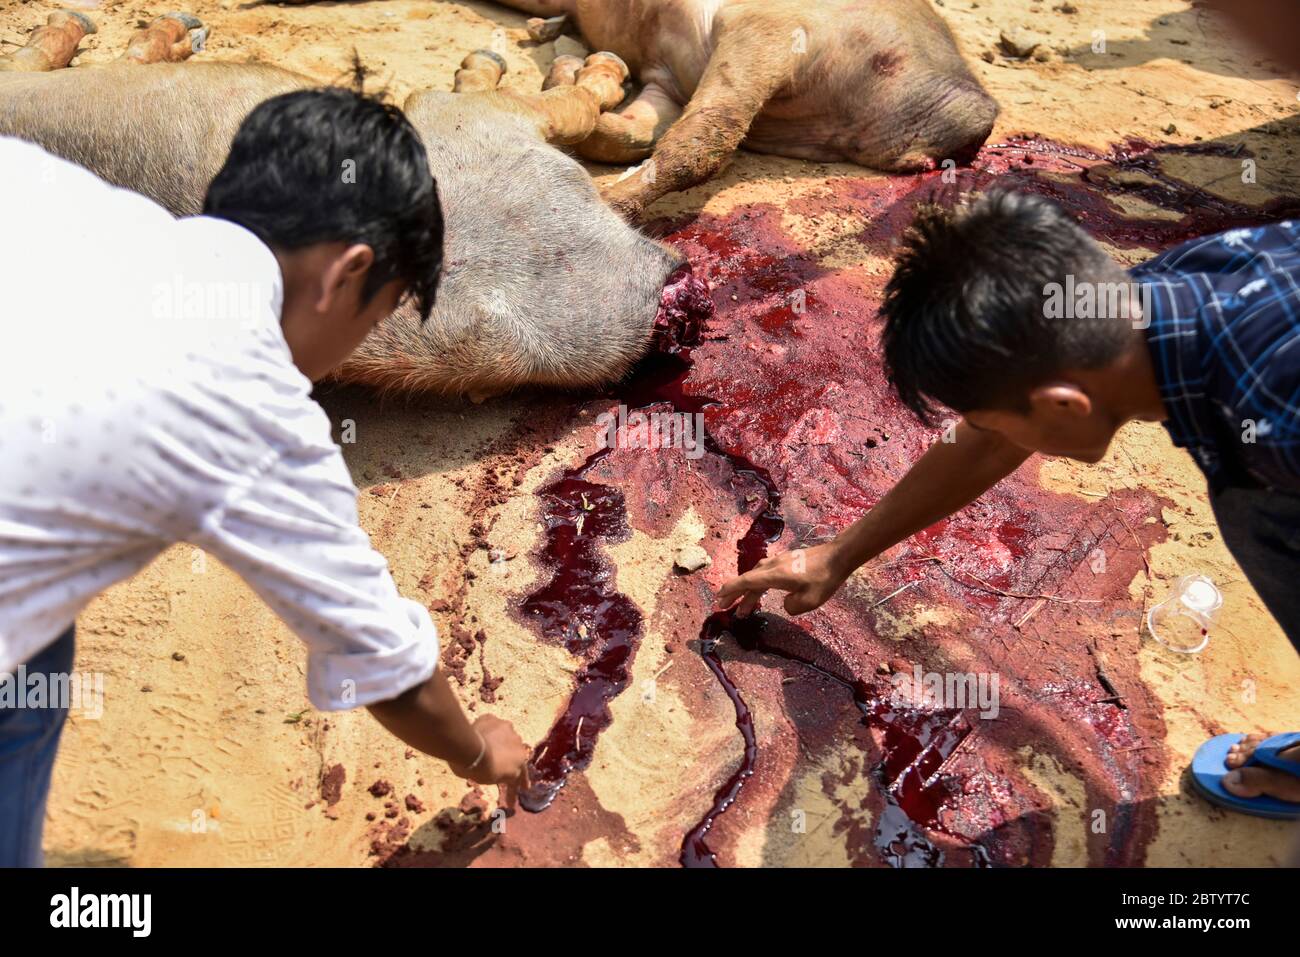 INDIA: I devoti tuffano le dita nel sangue versato della creatura. Le foto RACCAPRICCIANTI mostrano folle spietate che stanno per insanguinare i bufali Foto Stock